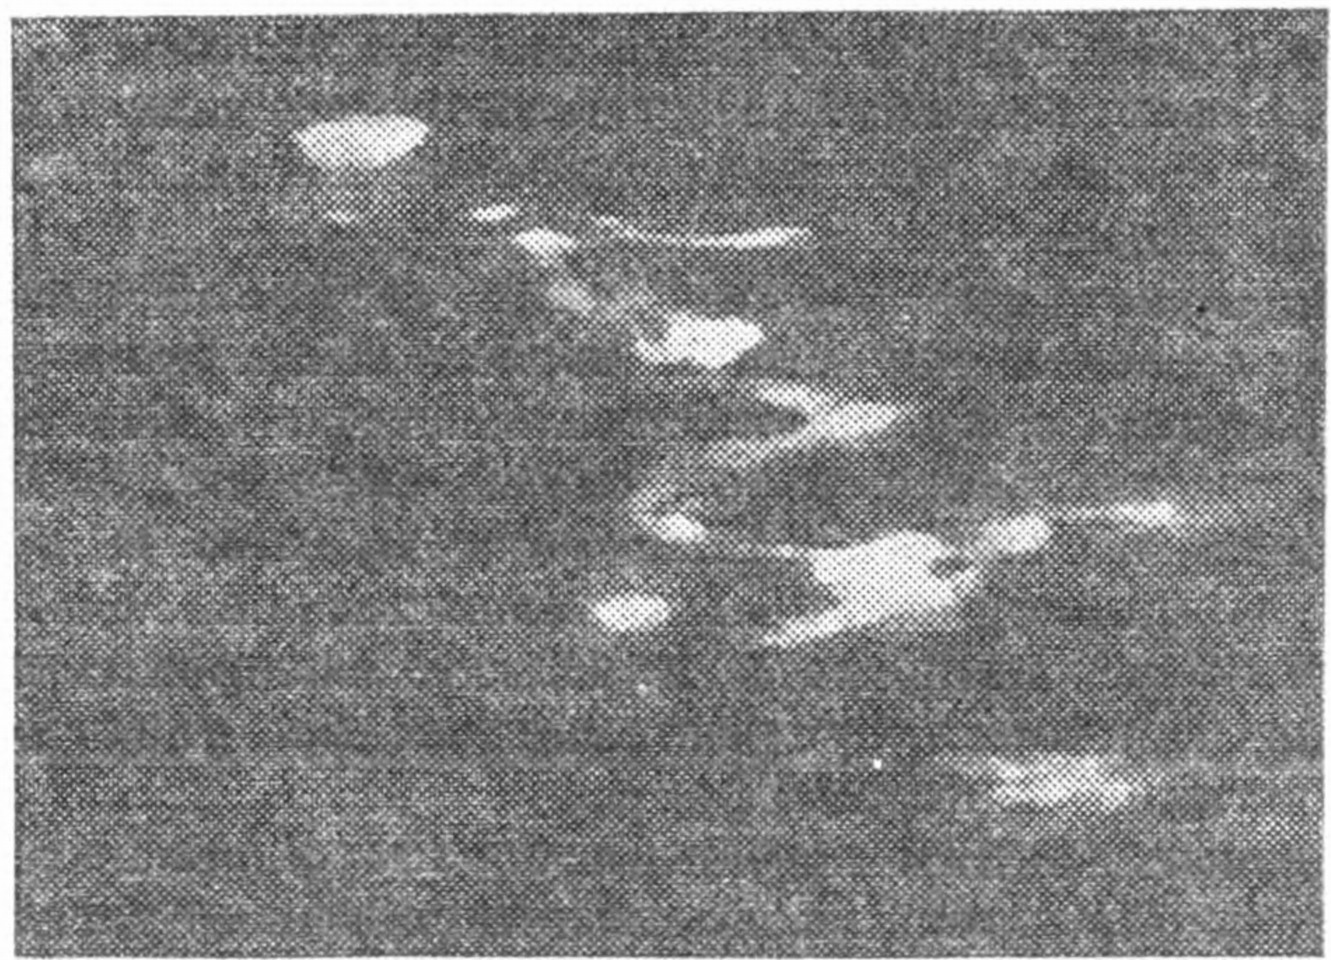 Рис. 100. Две фотографии яркого метеорного следа, полученные с перерывом в несколько минут Д. Дебабовым на Чукотке (1941 г.)